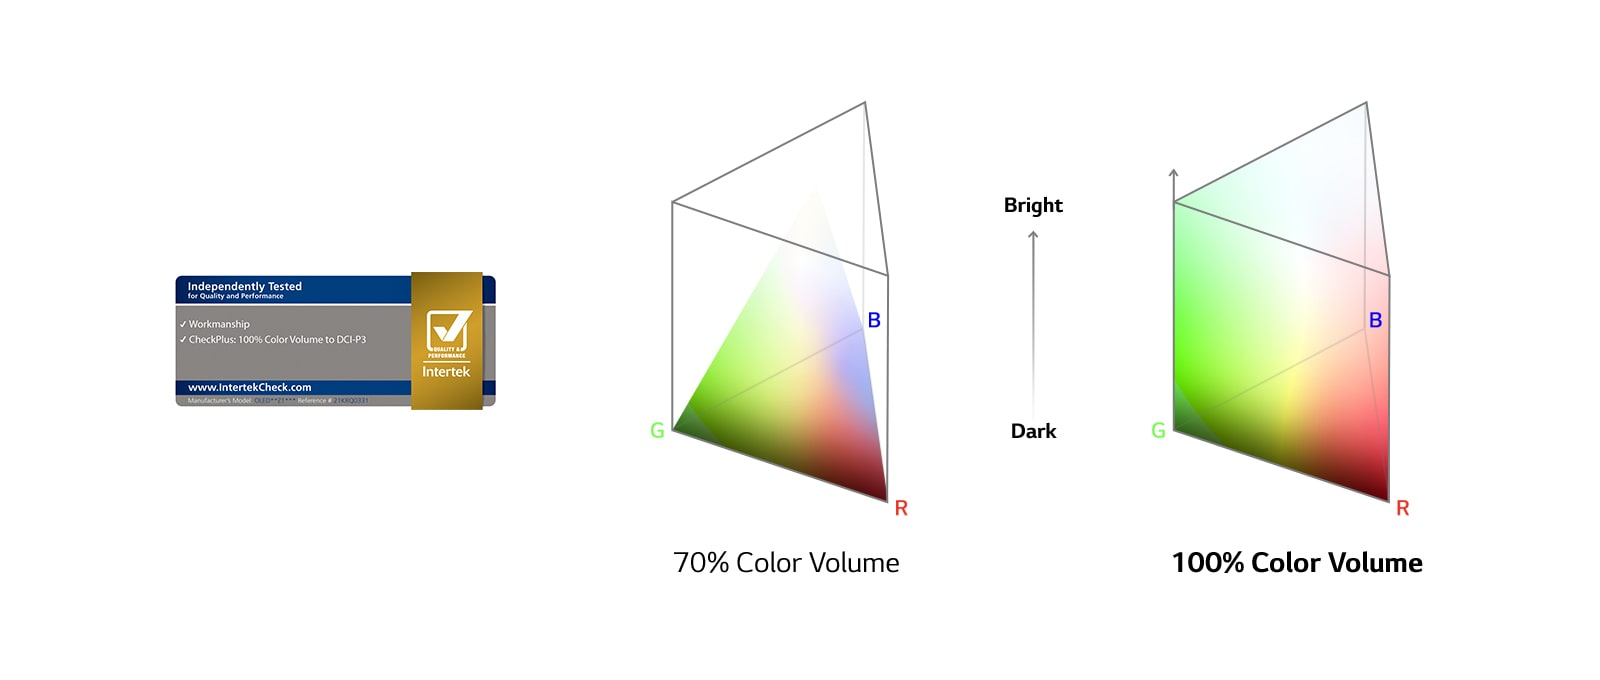 "Логотип 100% цветового объема, сертифицированный Intertek. График сравнения 70% цветового объема и 100% цветового объема."